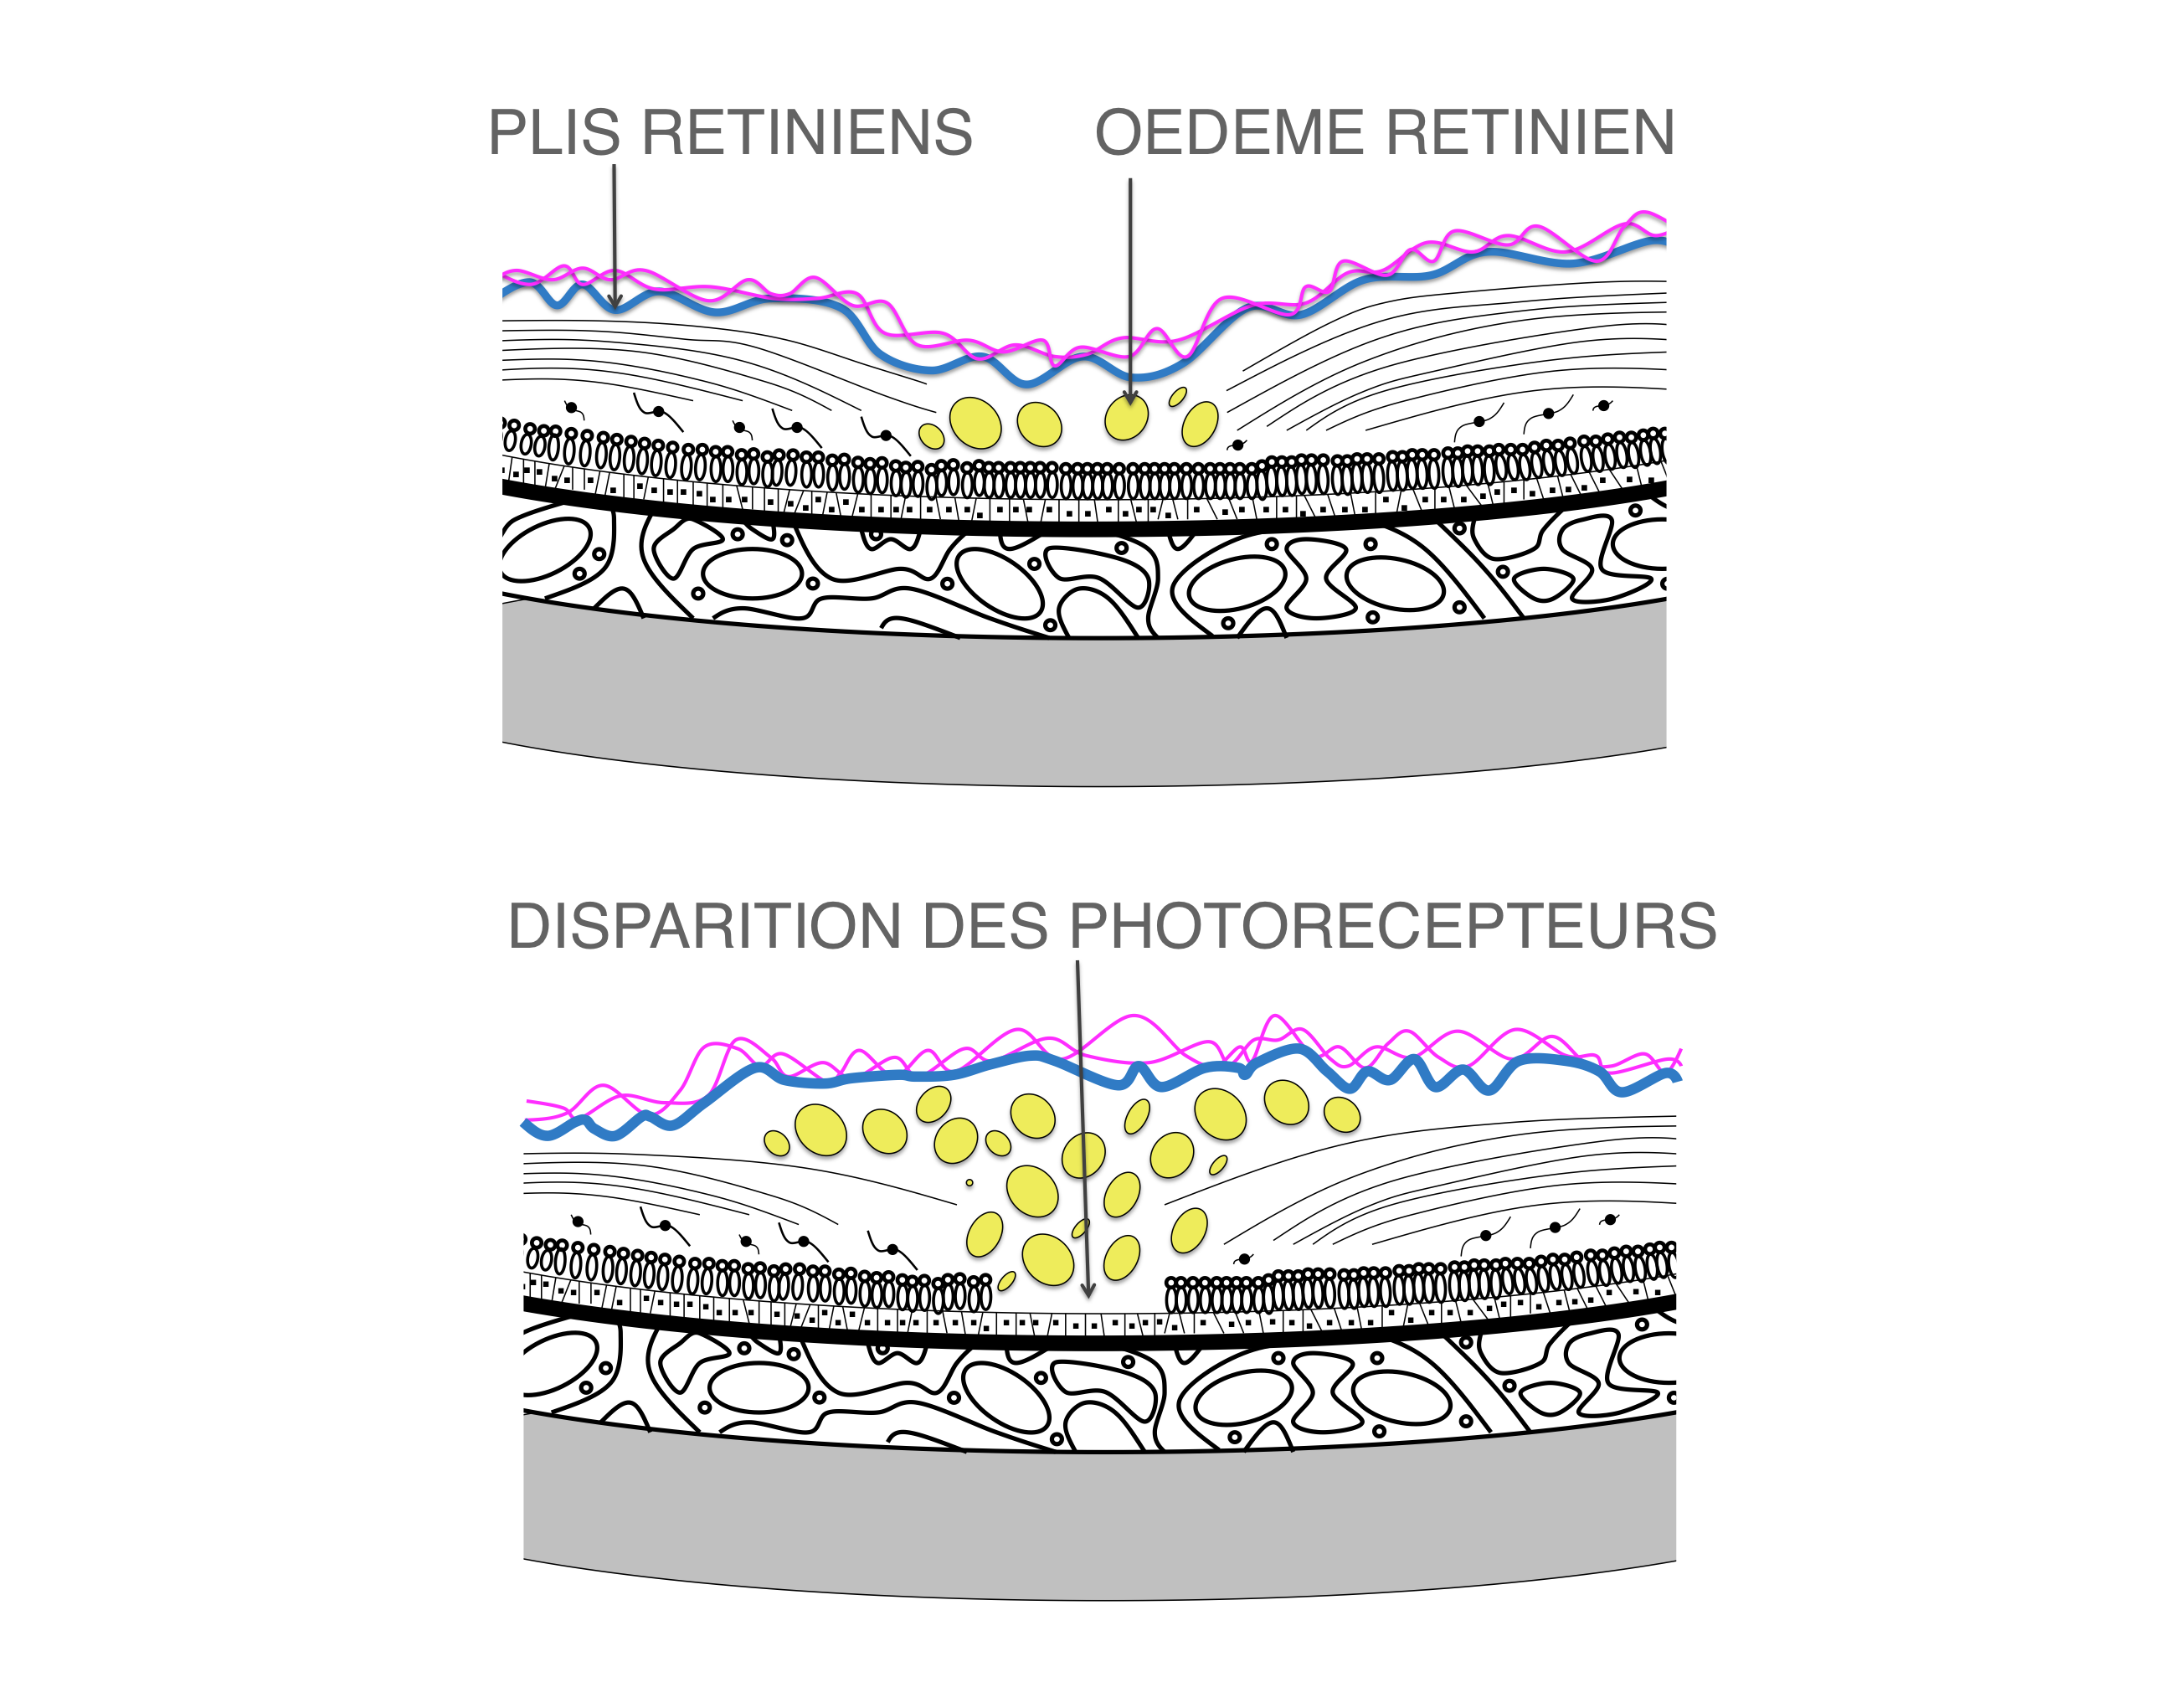 membrane épirétinienne compliquée d'oedème intra rétinien maculaire marquée pouvant être à l'origine d'une perte irréversible des photorécepteurs